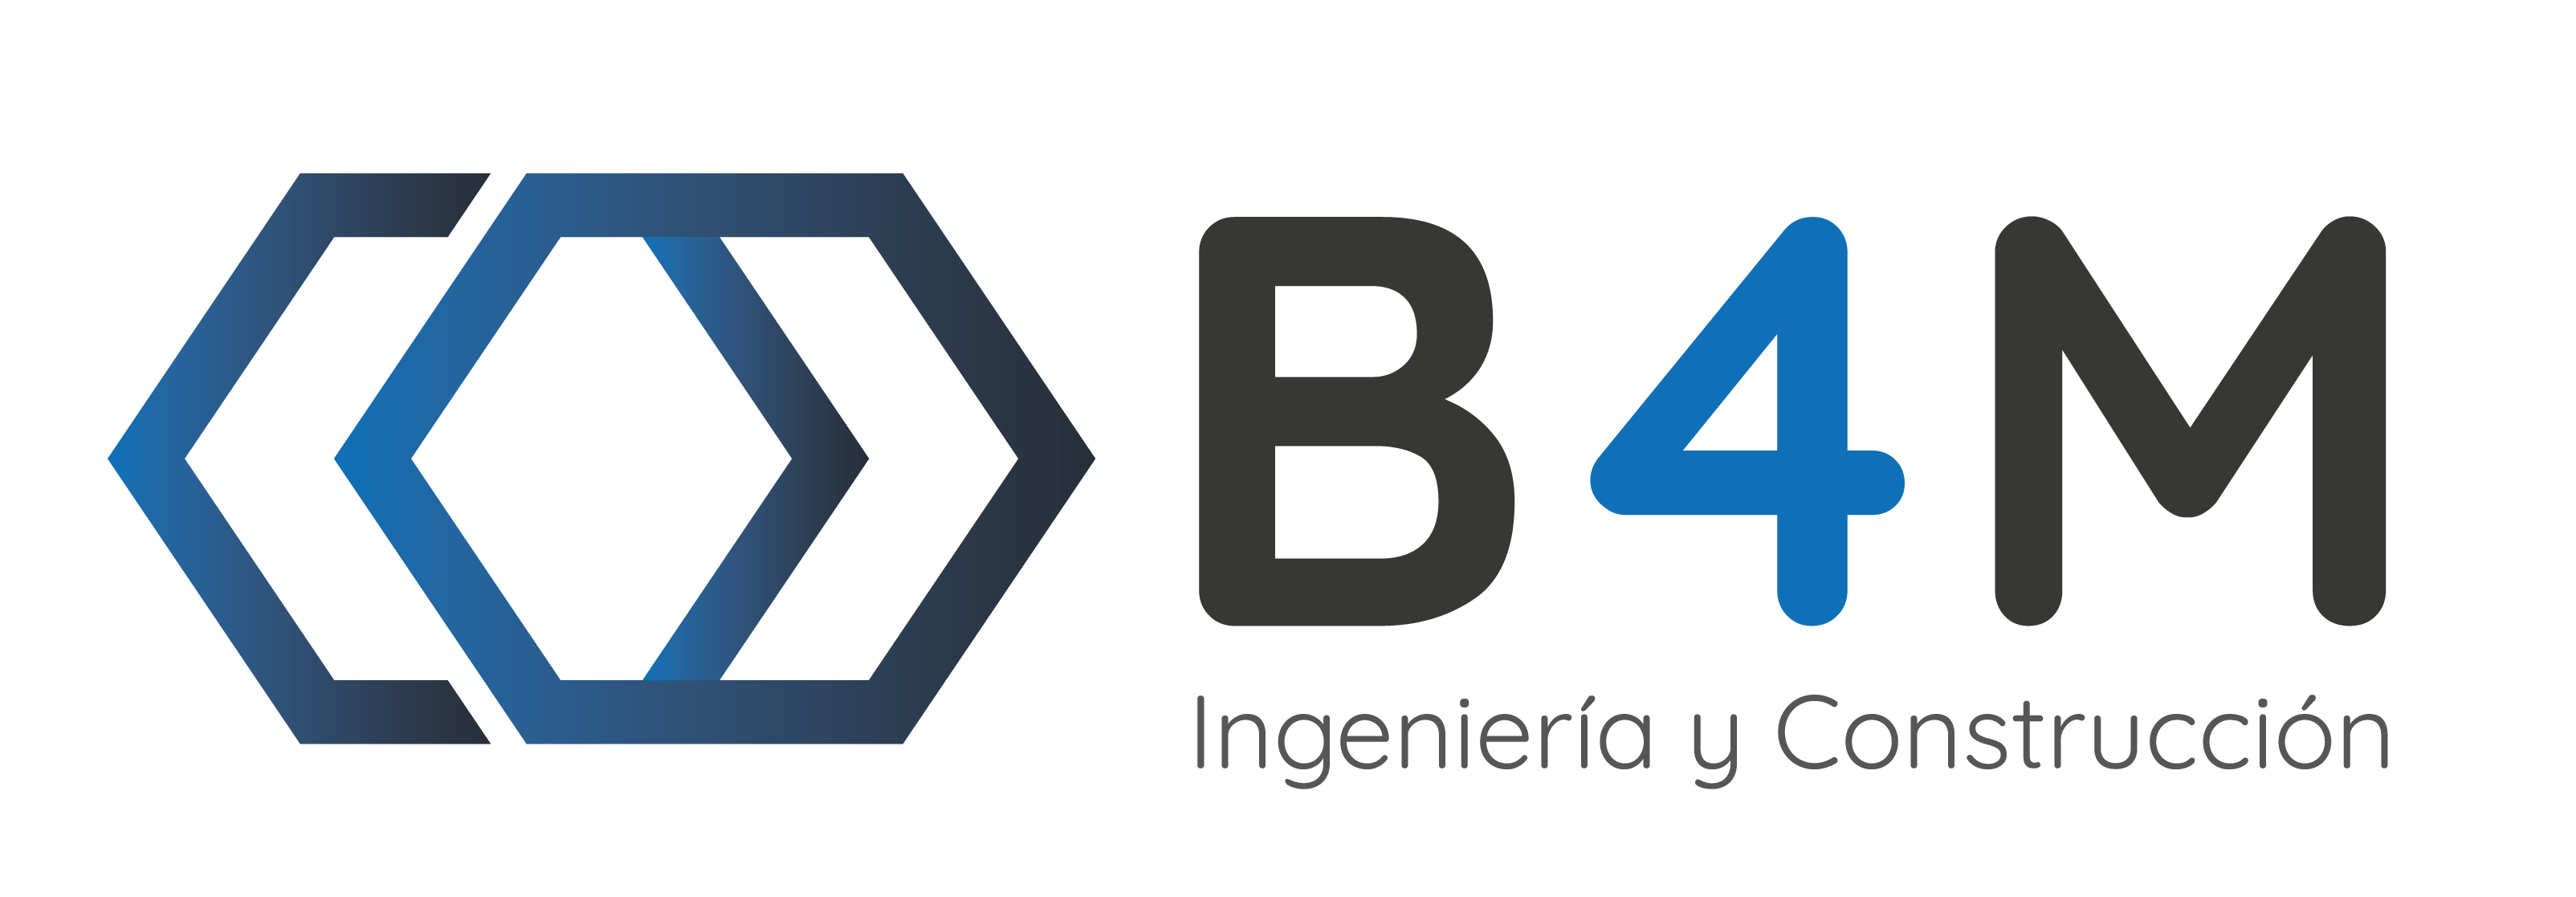 logotipo-color-fondo-transparente